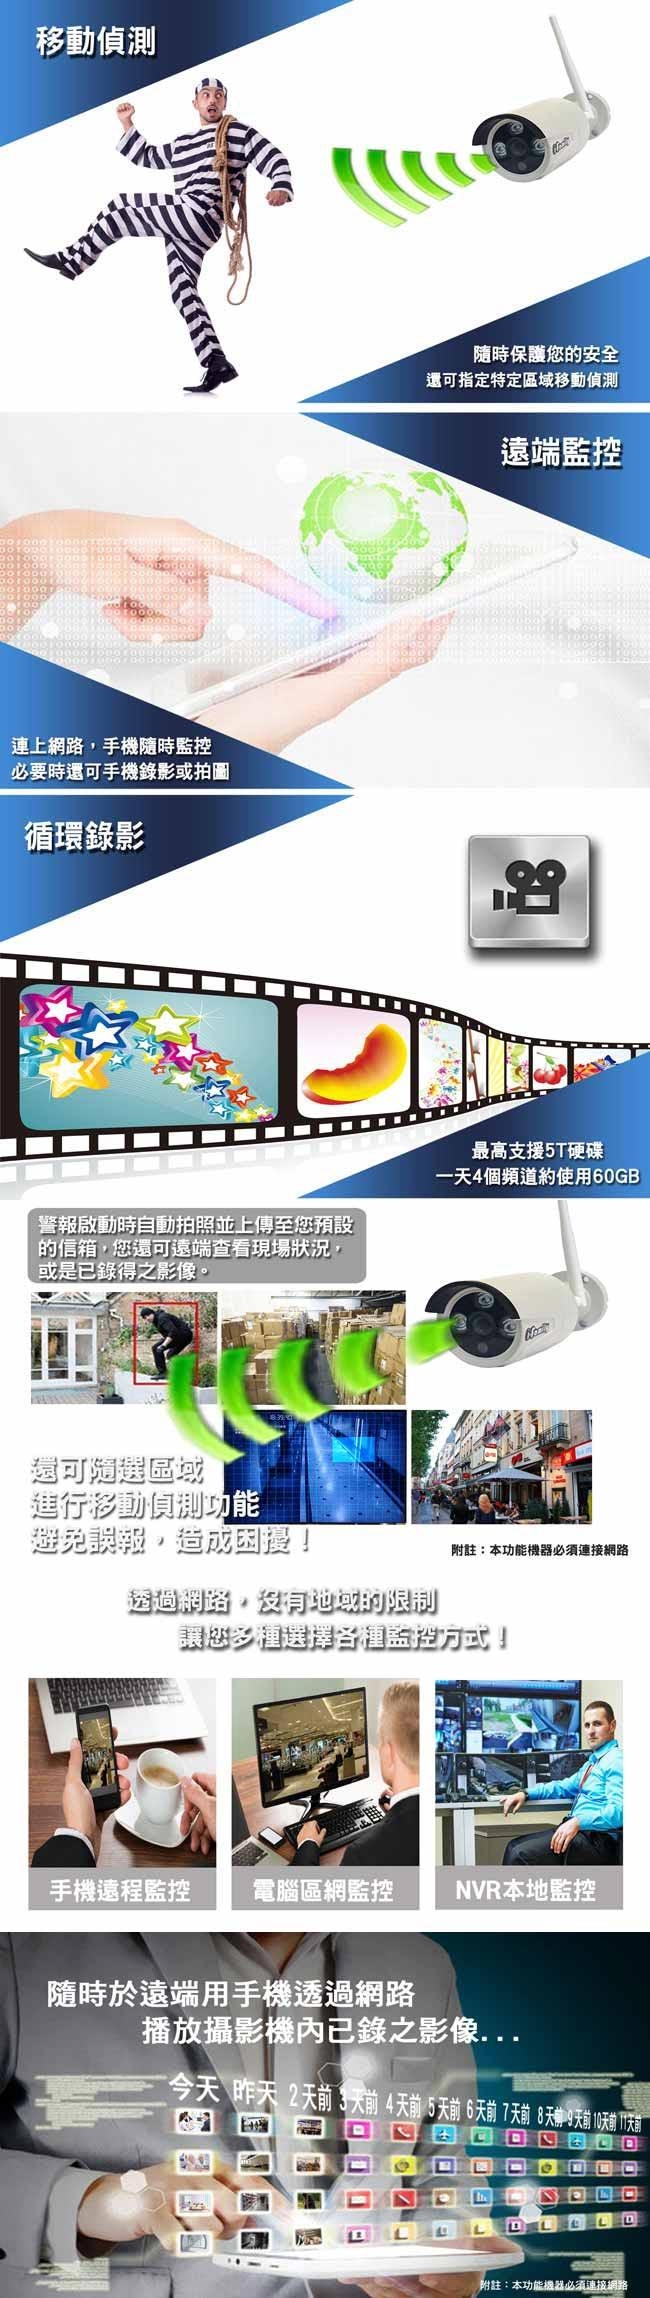 宇晨I-Family免配線/免設定960P四路式無線監視系統套裝一機四鏡